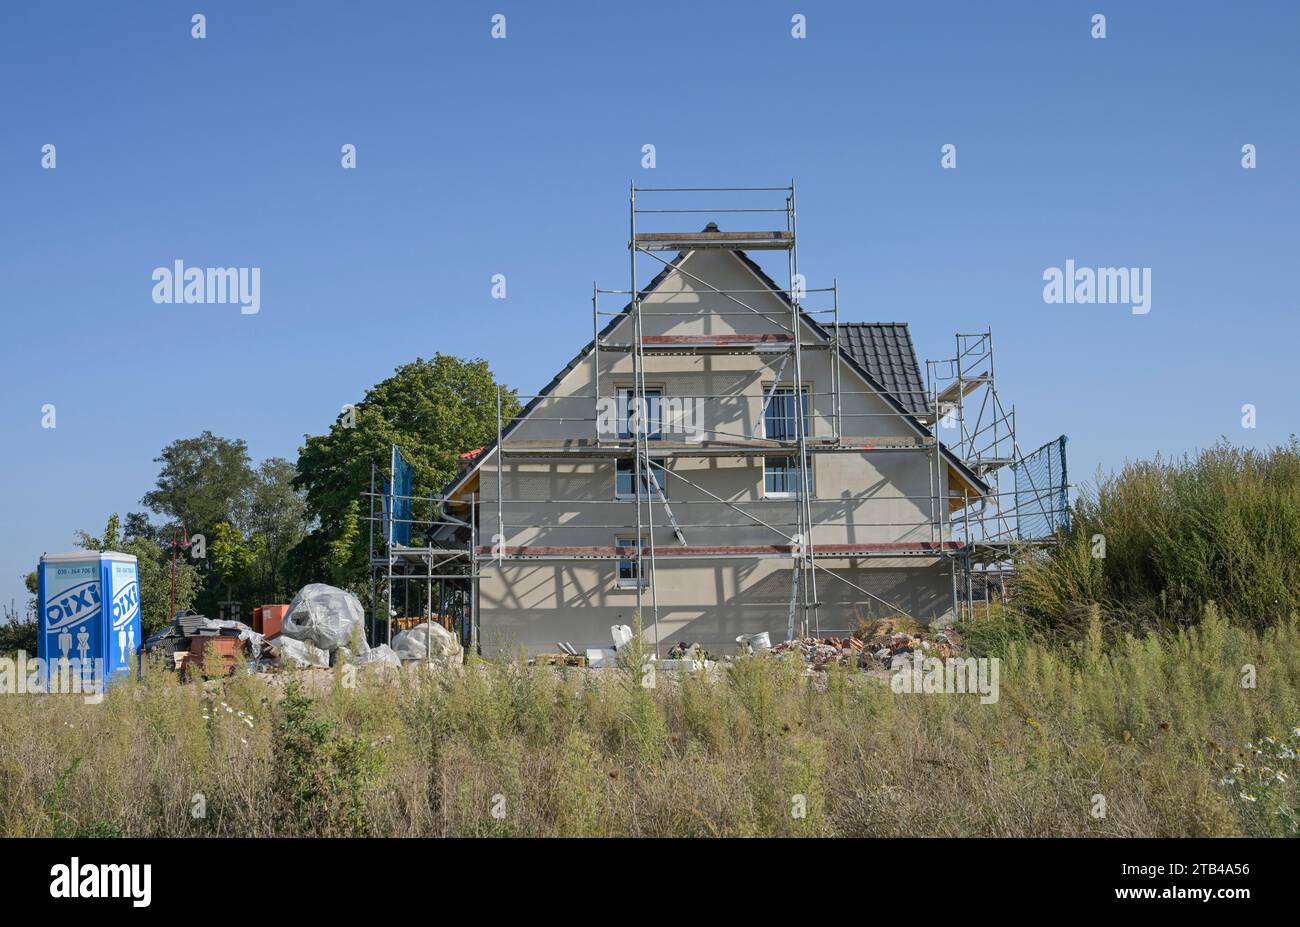 Construction site, new build detached house, Am Rueggen Ost development area, Melchow am Ruegen, Brandenburg, Germany Stock Photo